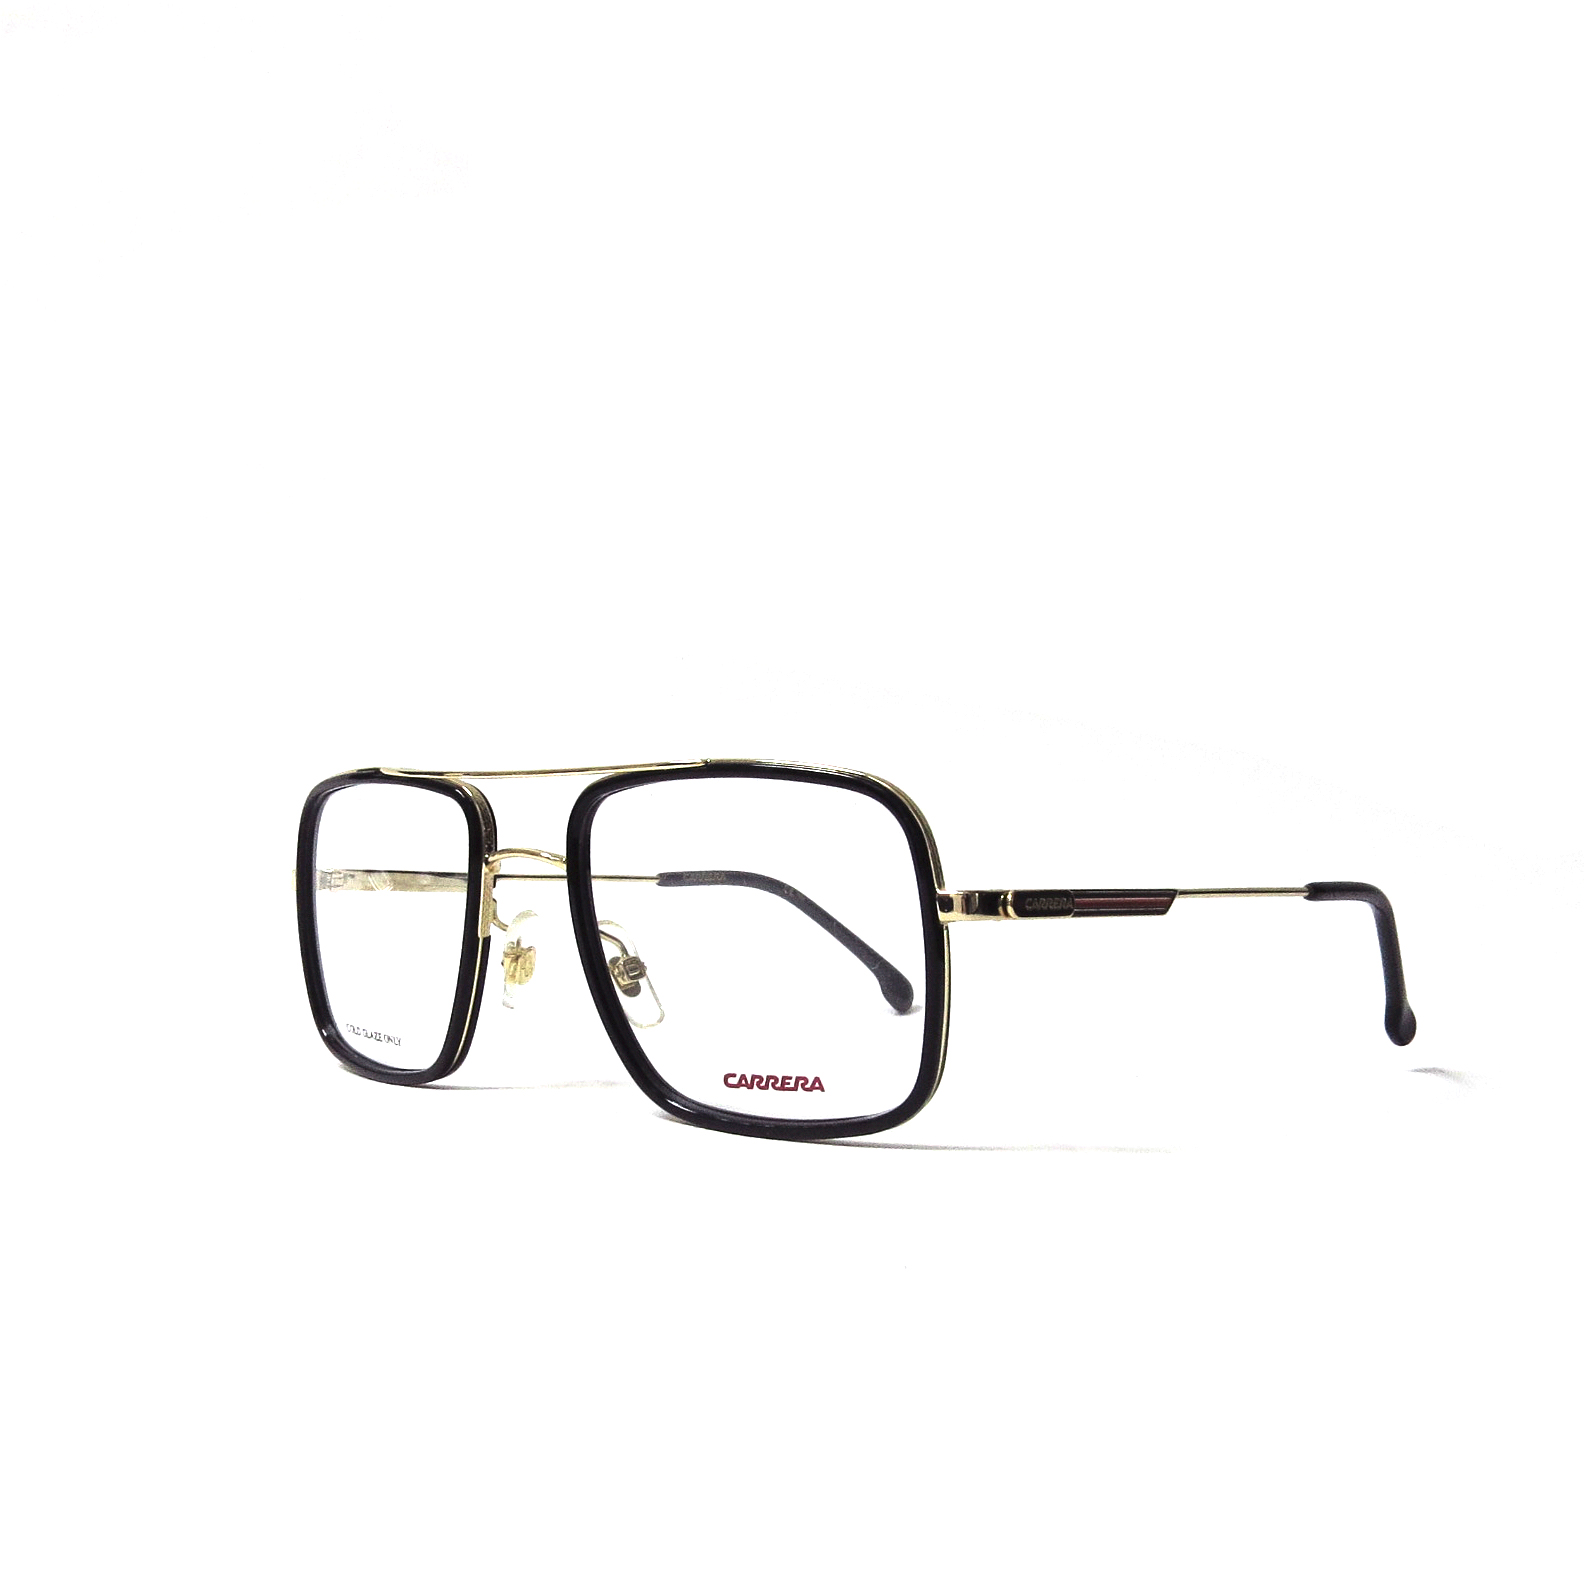 híbrido Camarada Galaxia Óptica las gafas | CARRERA - 1116 - Óptica las gafas